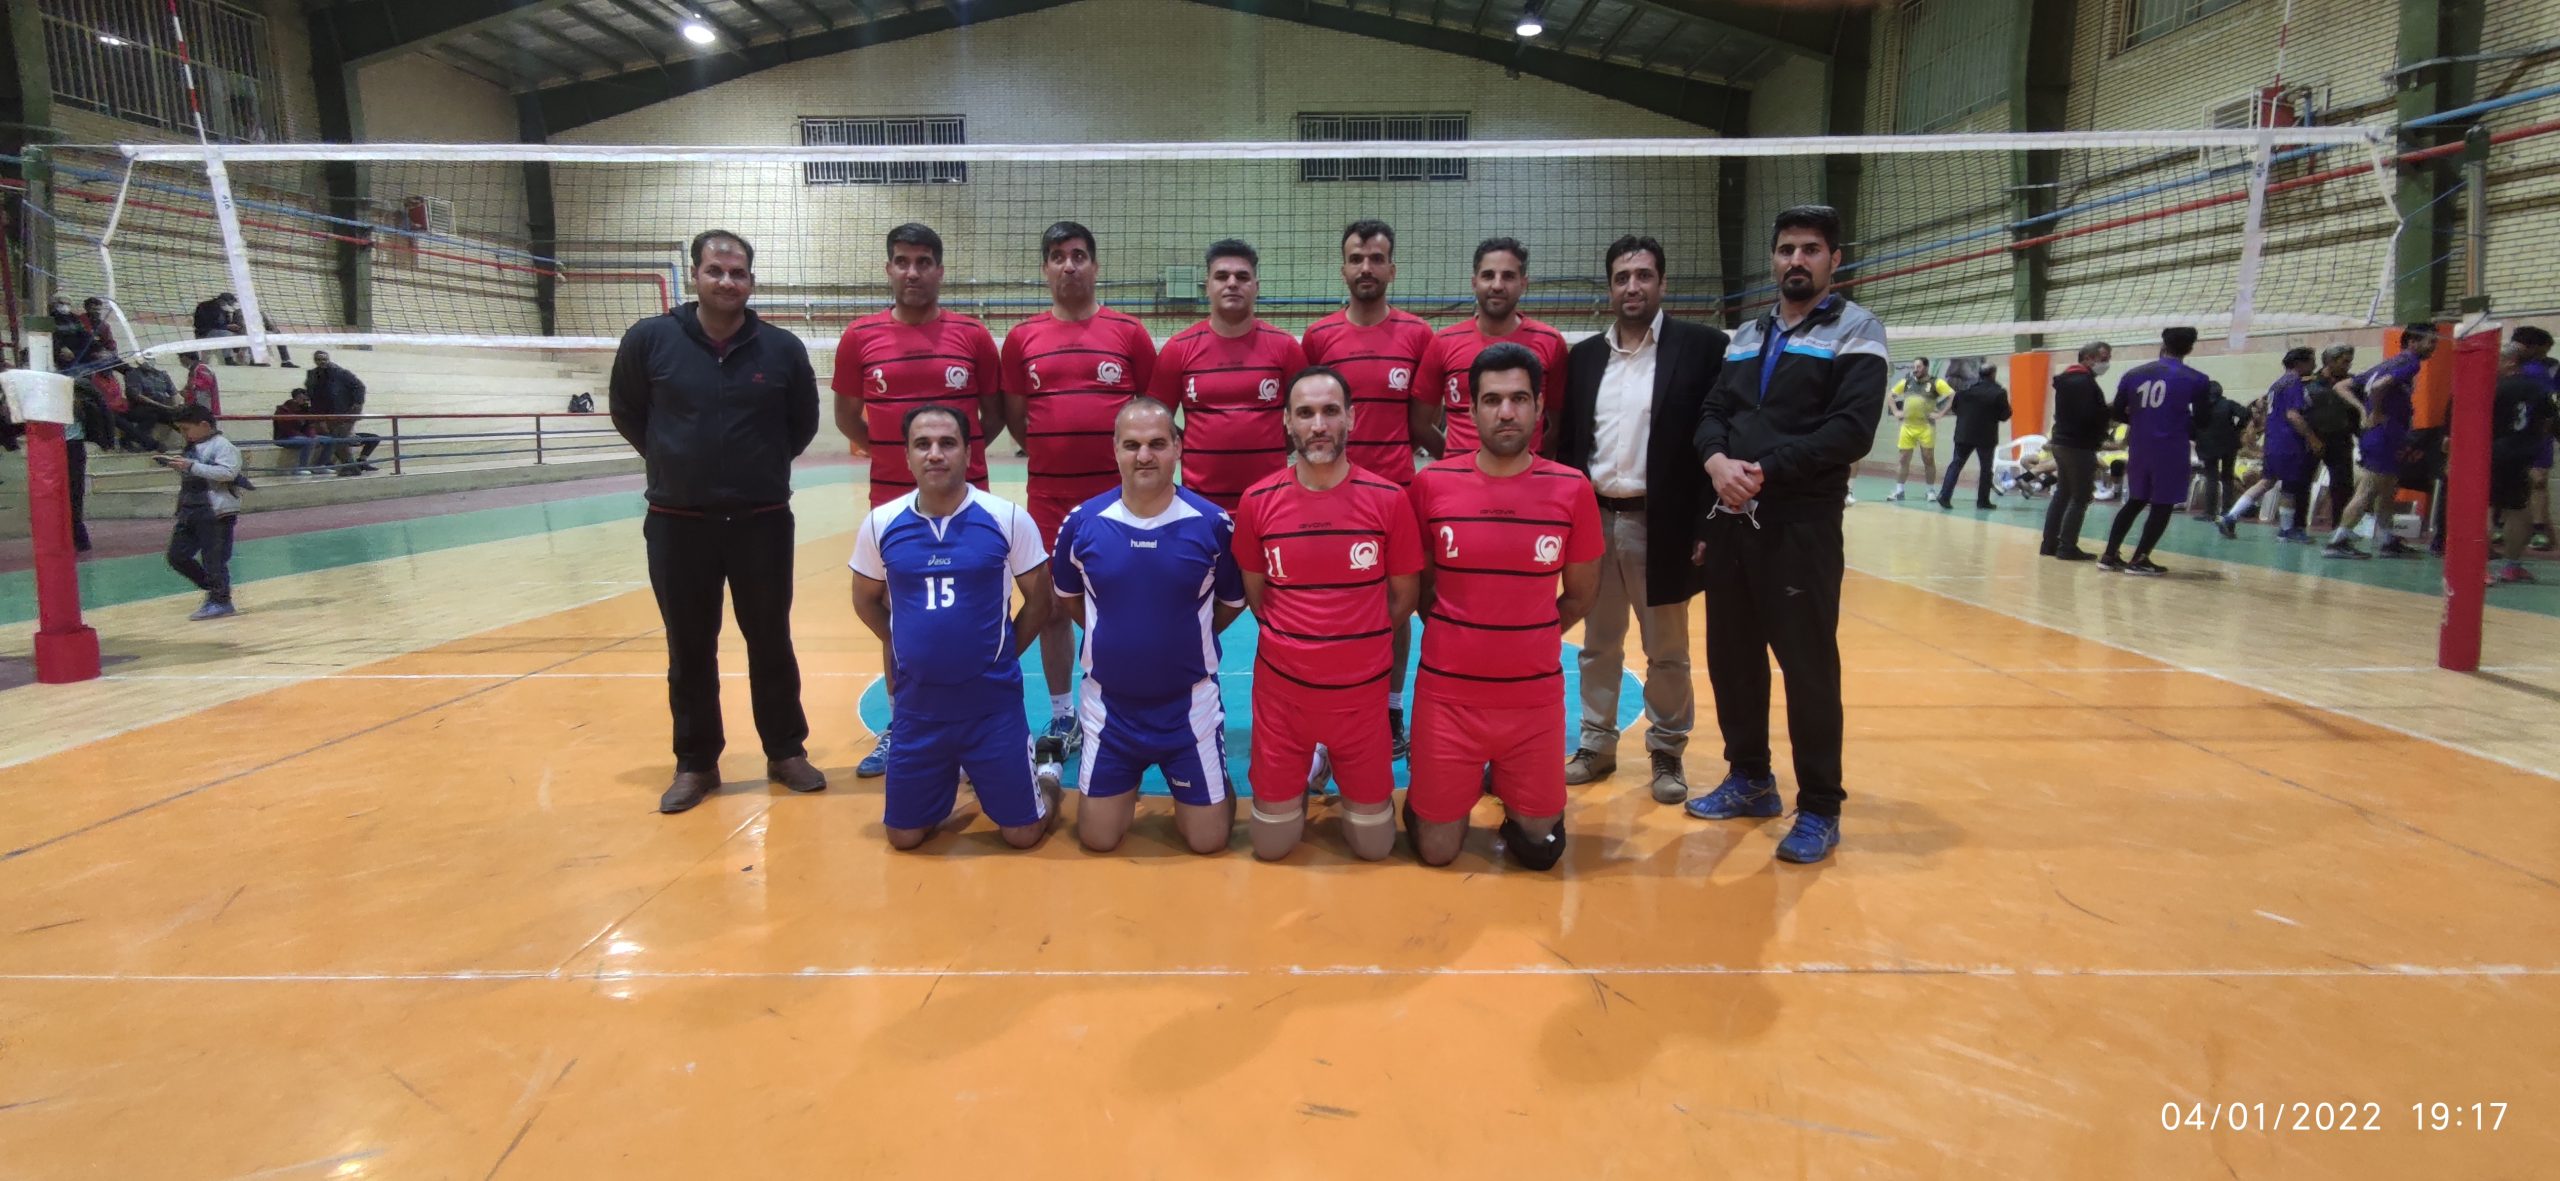 راه یابی تیم والیبال کارکنان شهرداری بیرجند به نیمه نهایی مسابقات استانی والیبال کارکنان دولت